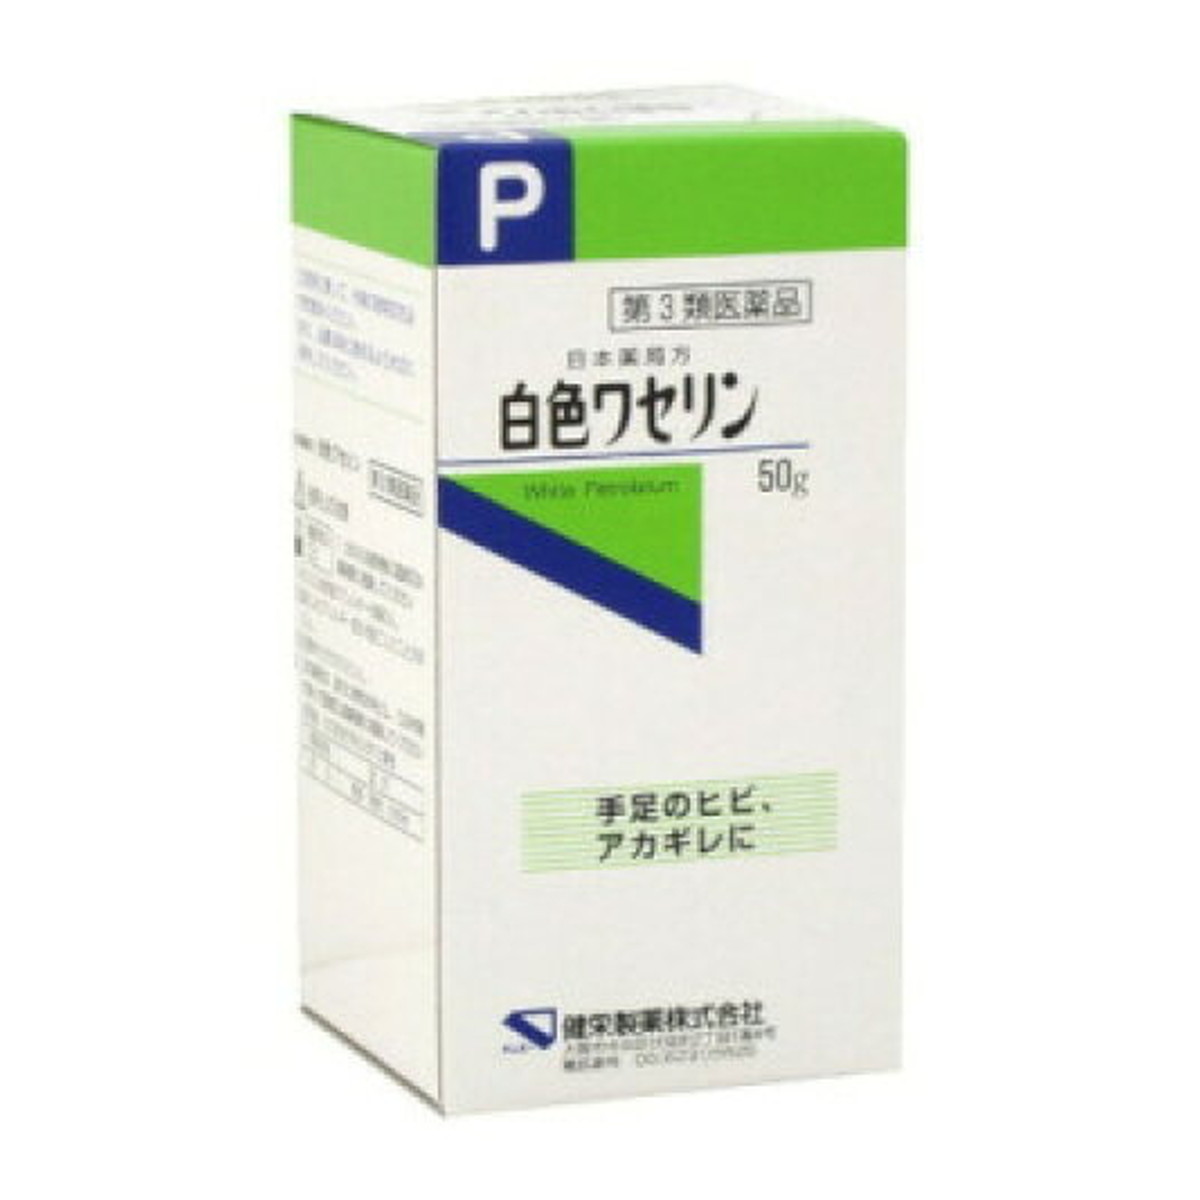 【オータムセール】【第3類医薬品】健栄製薬 日本薬局方 白色ワセリン 50g